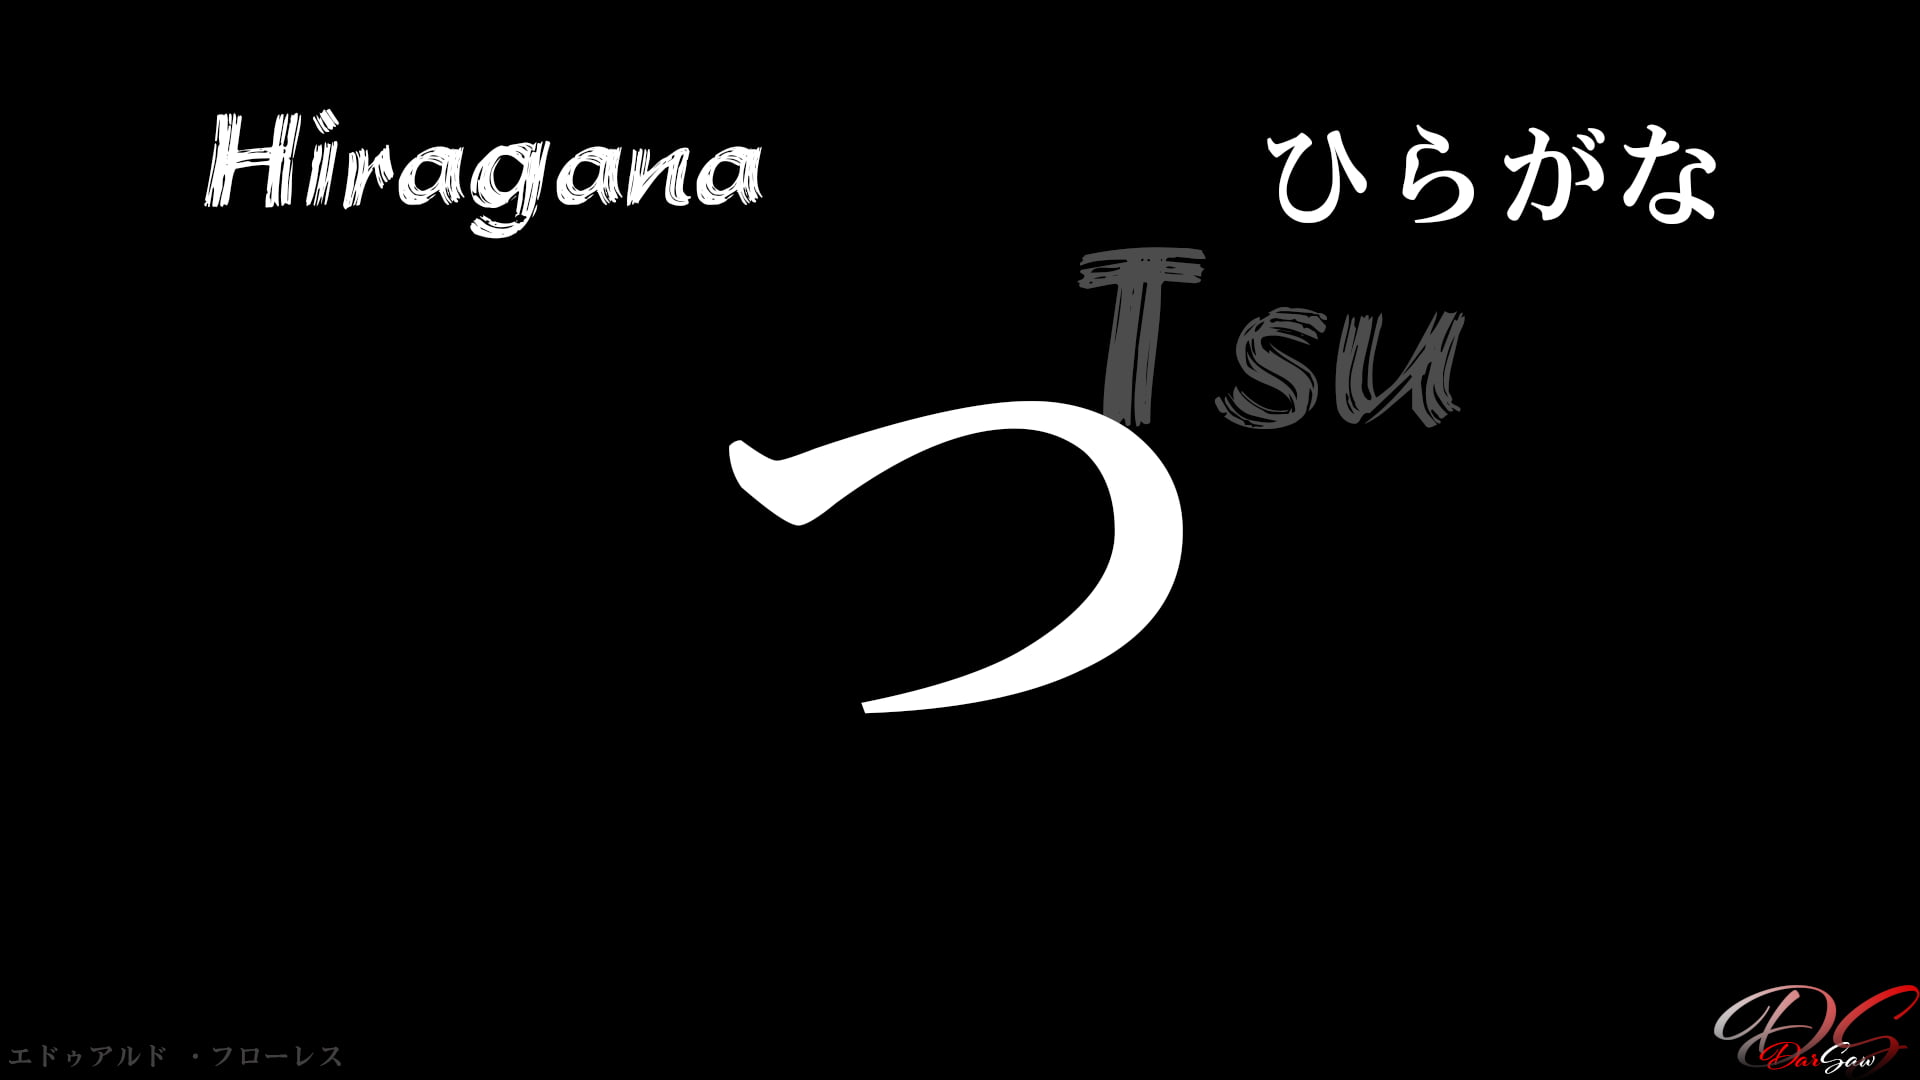 hiragana, Japones, estudiar